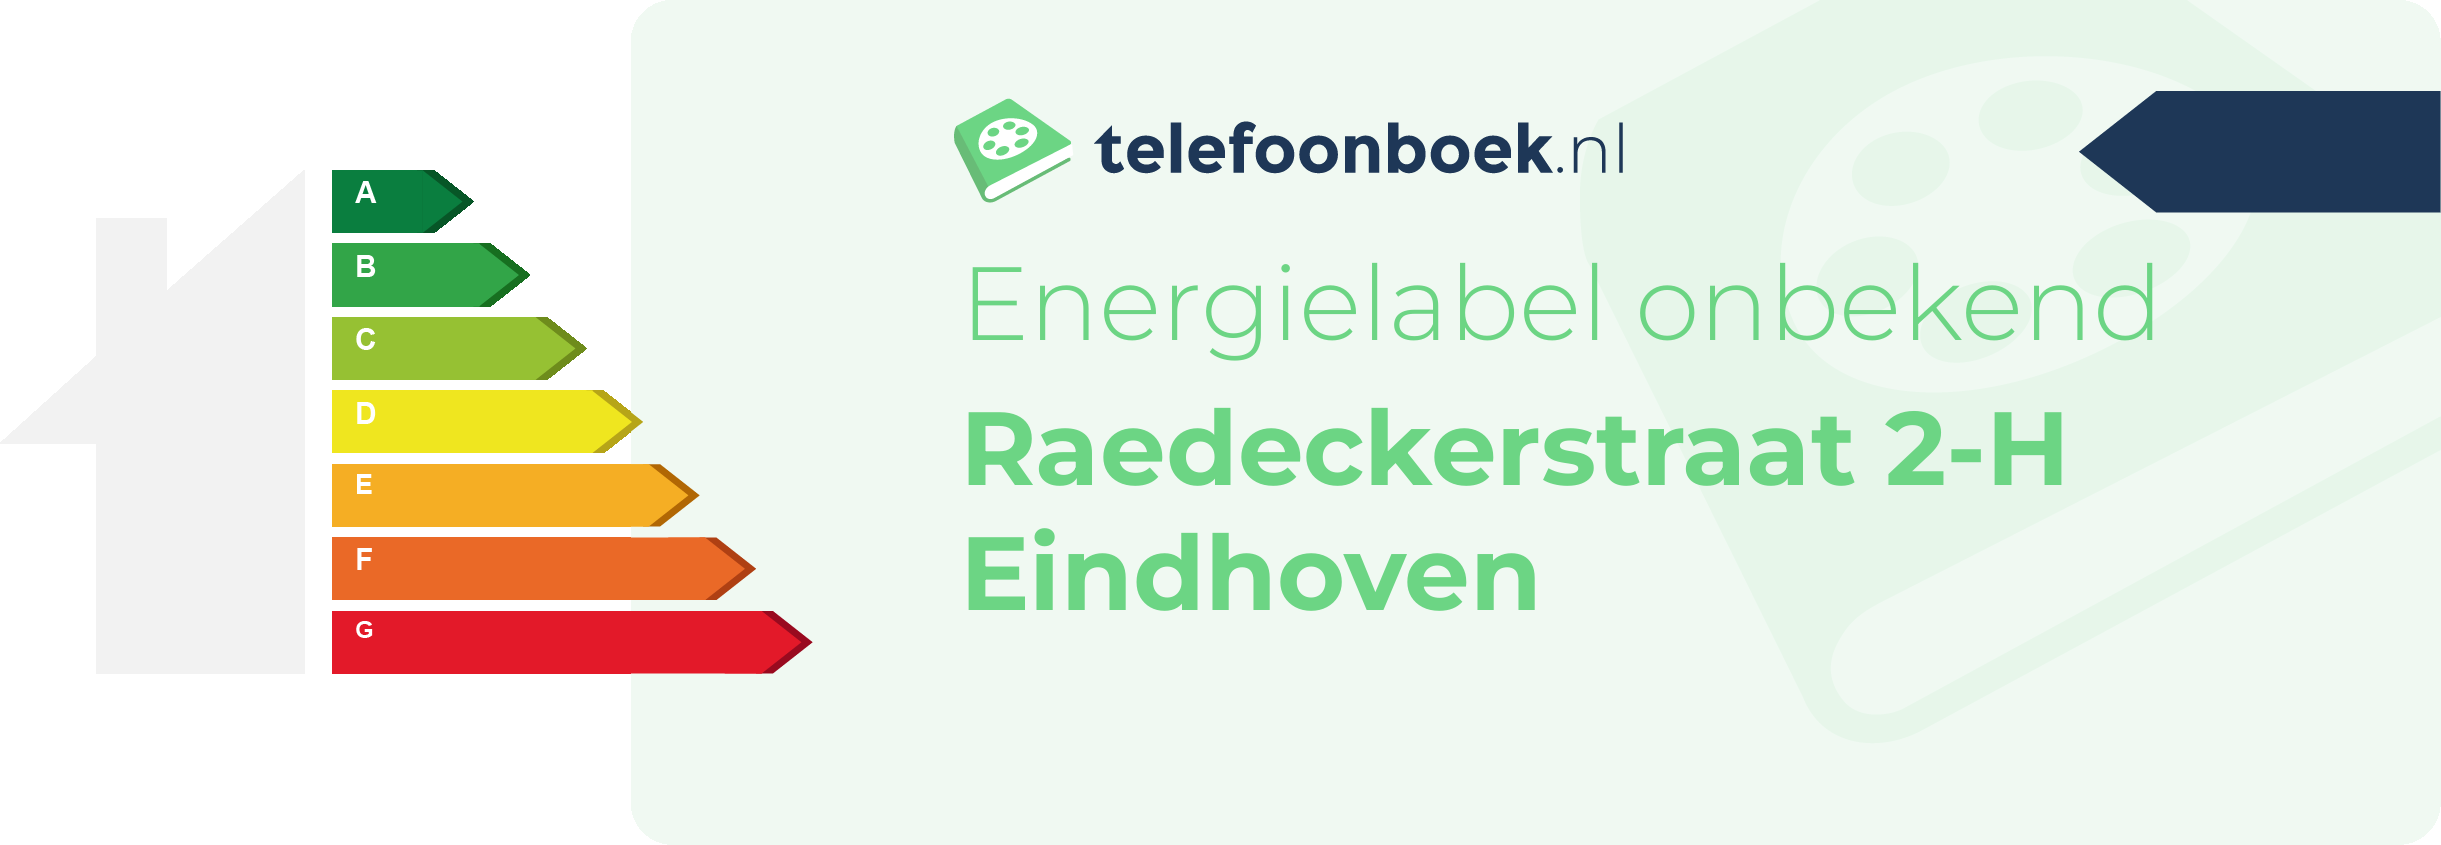 Energielabel Raedeckerstraat 2-H Eindhoven